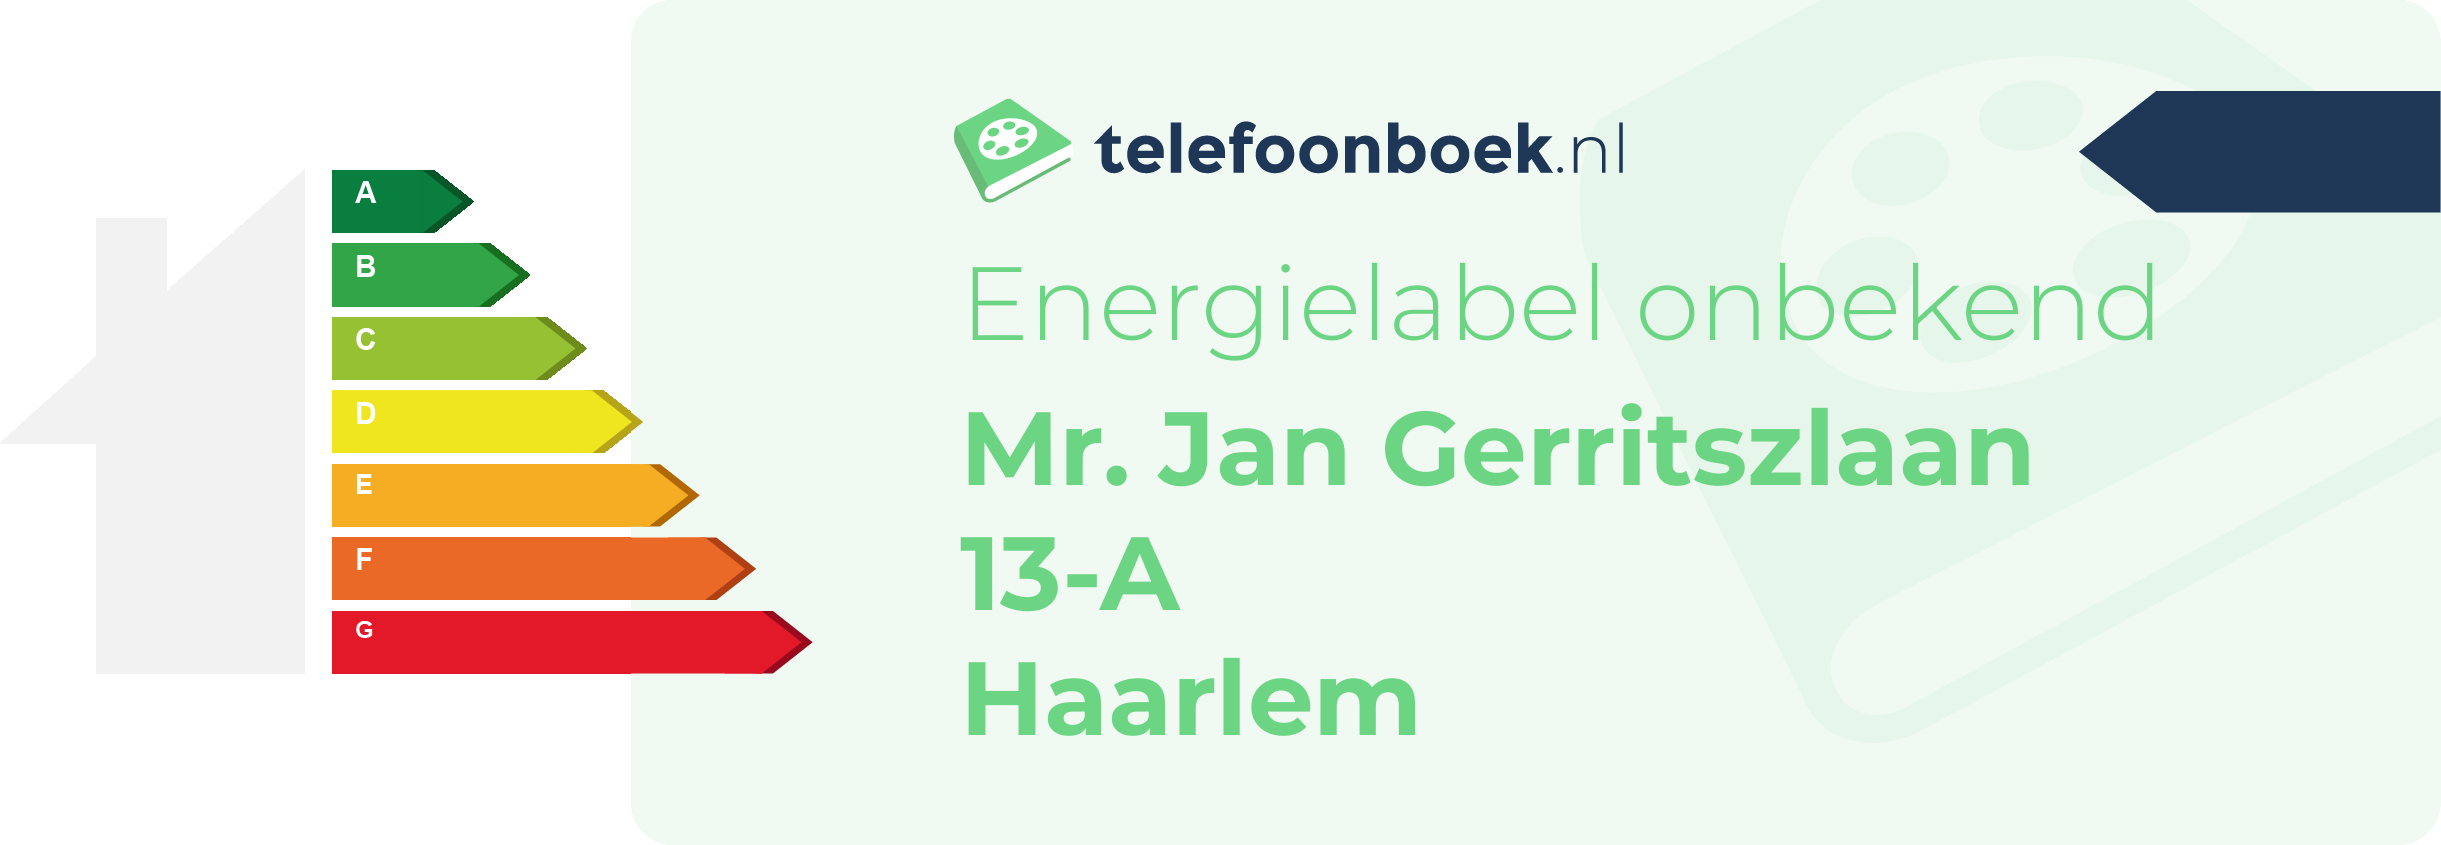 Energielabel Mr. Jan Gerritszlaan 13-A Haarlem